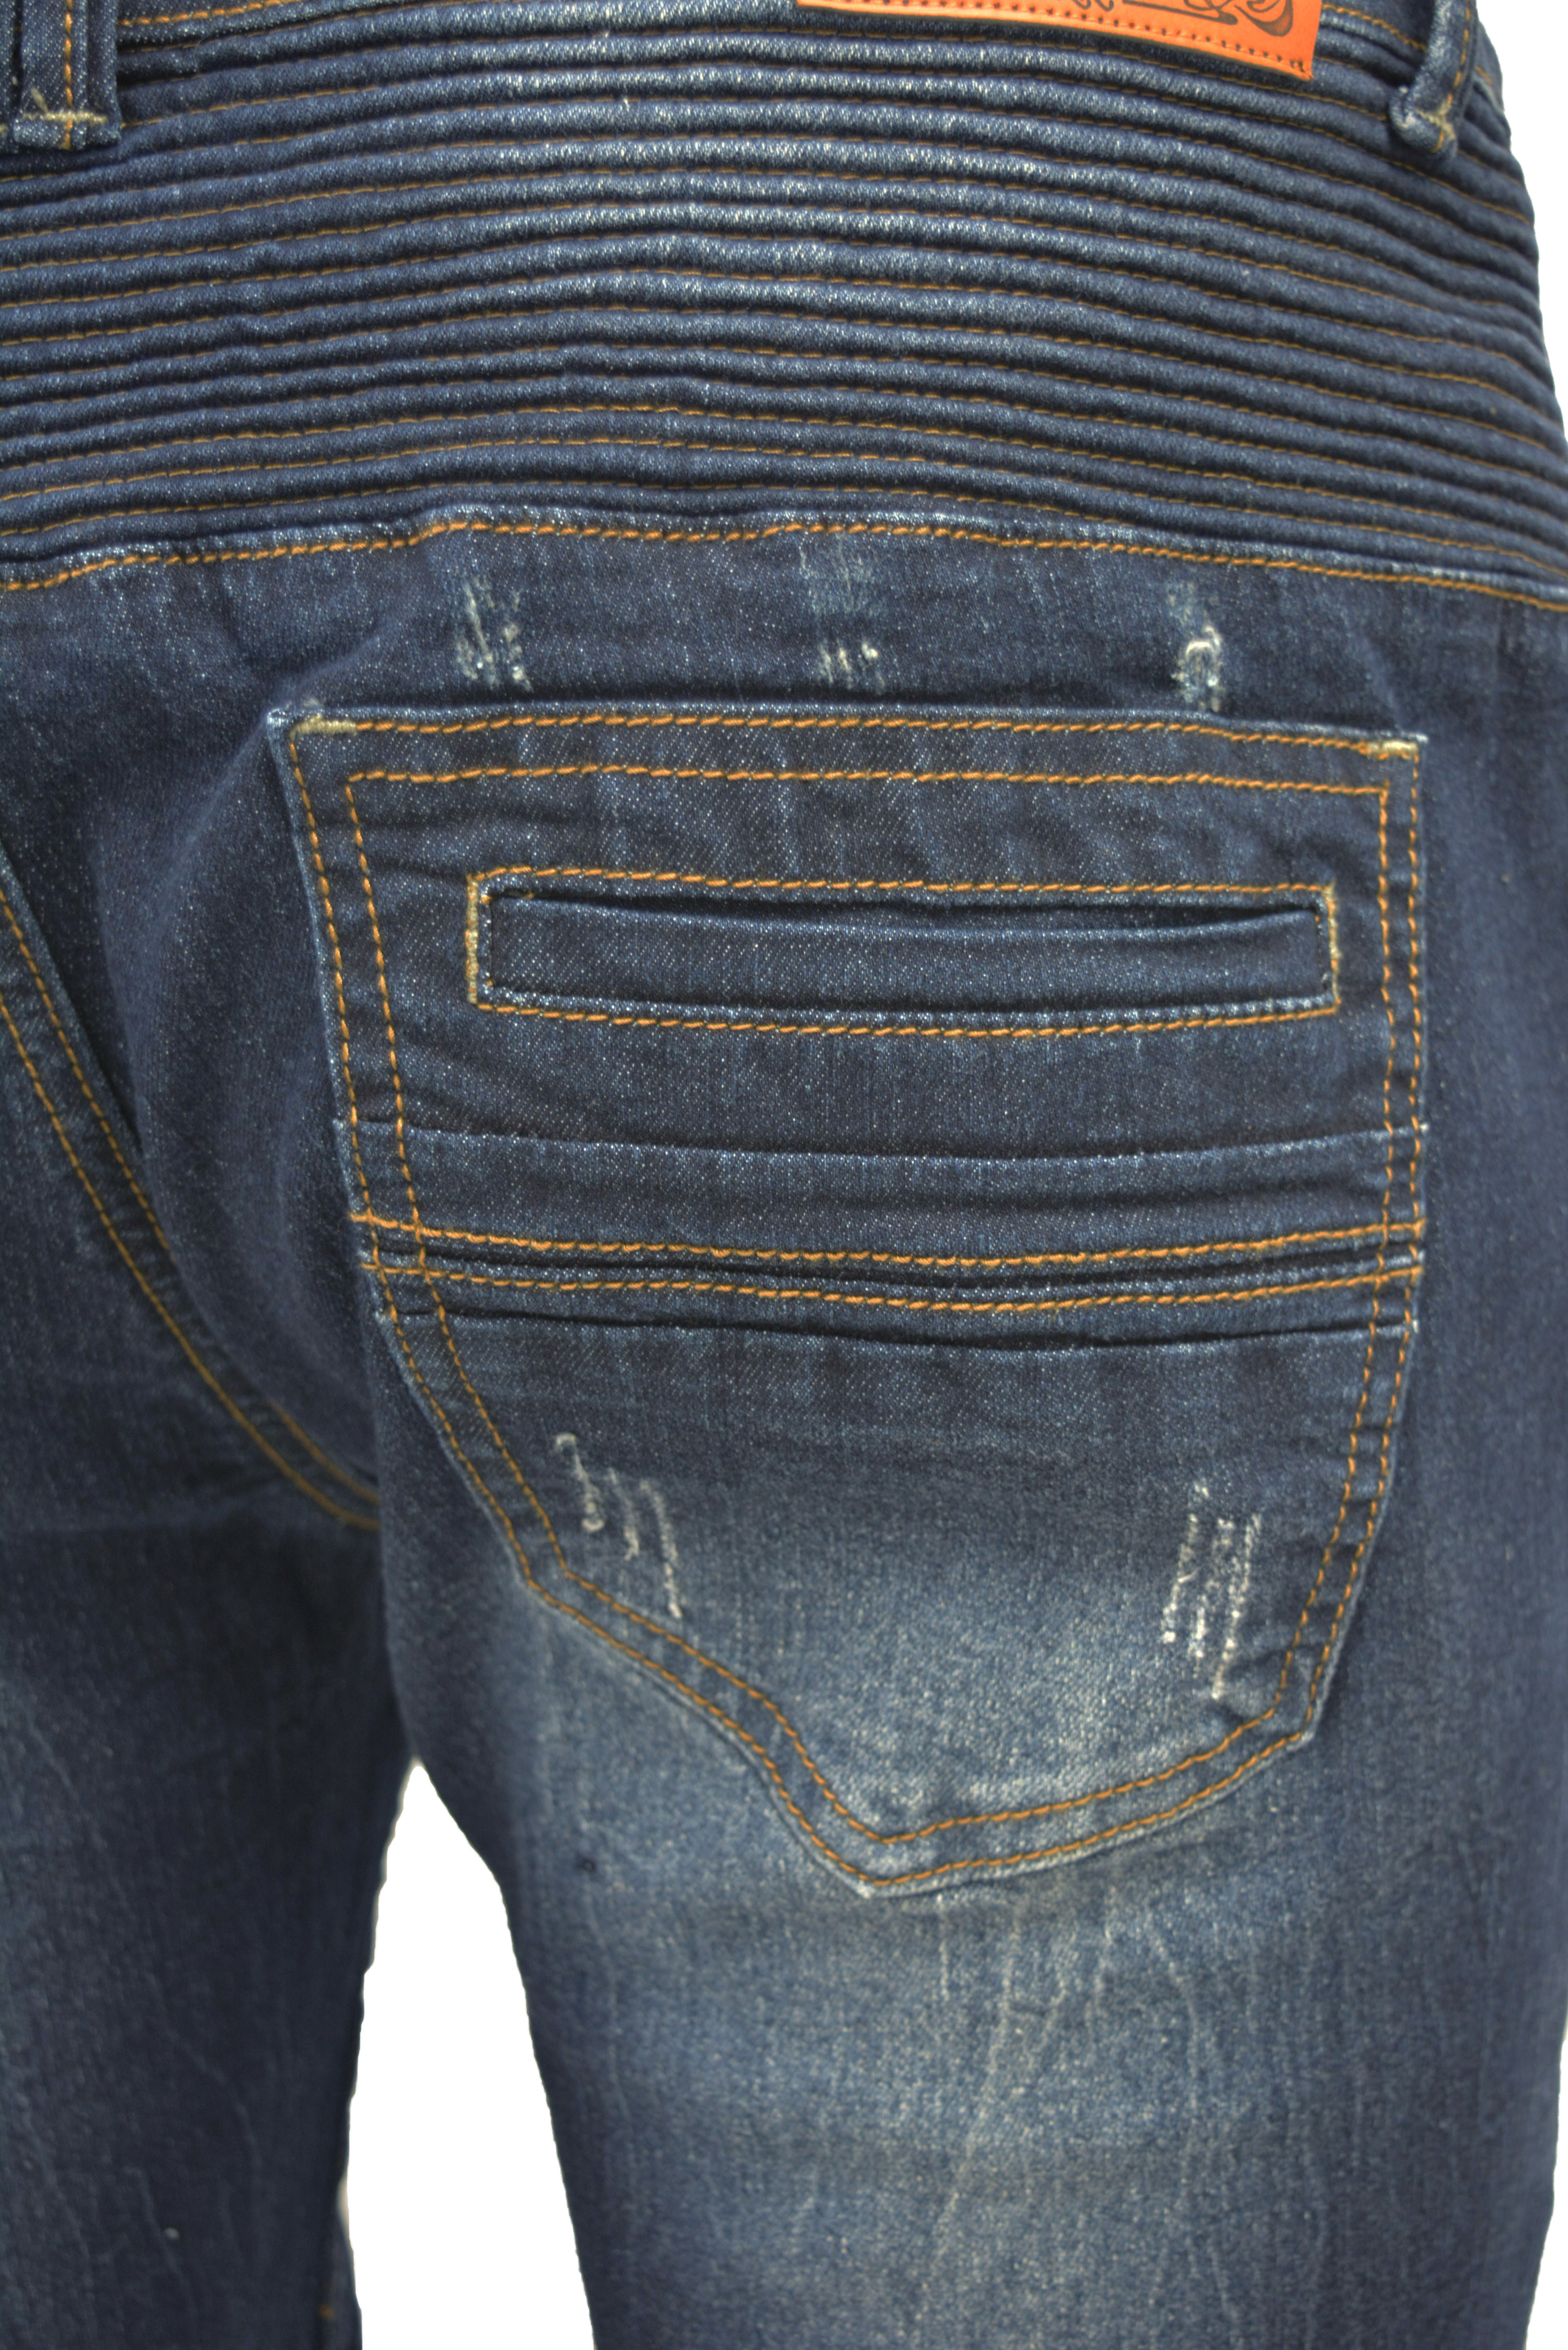 RAW X Men's Slim Fit Skinny Biker Jean, Comfy Flex Stretch Moto Wash Rip Distressed Denim Jeans Pants - image 5 of 5